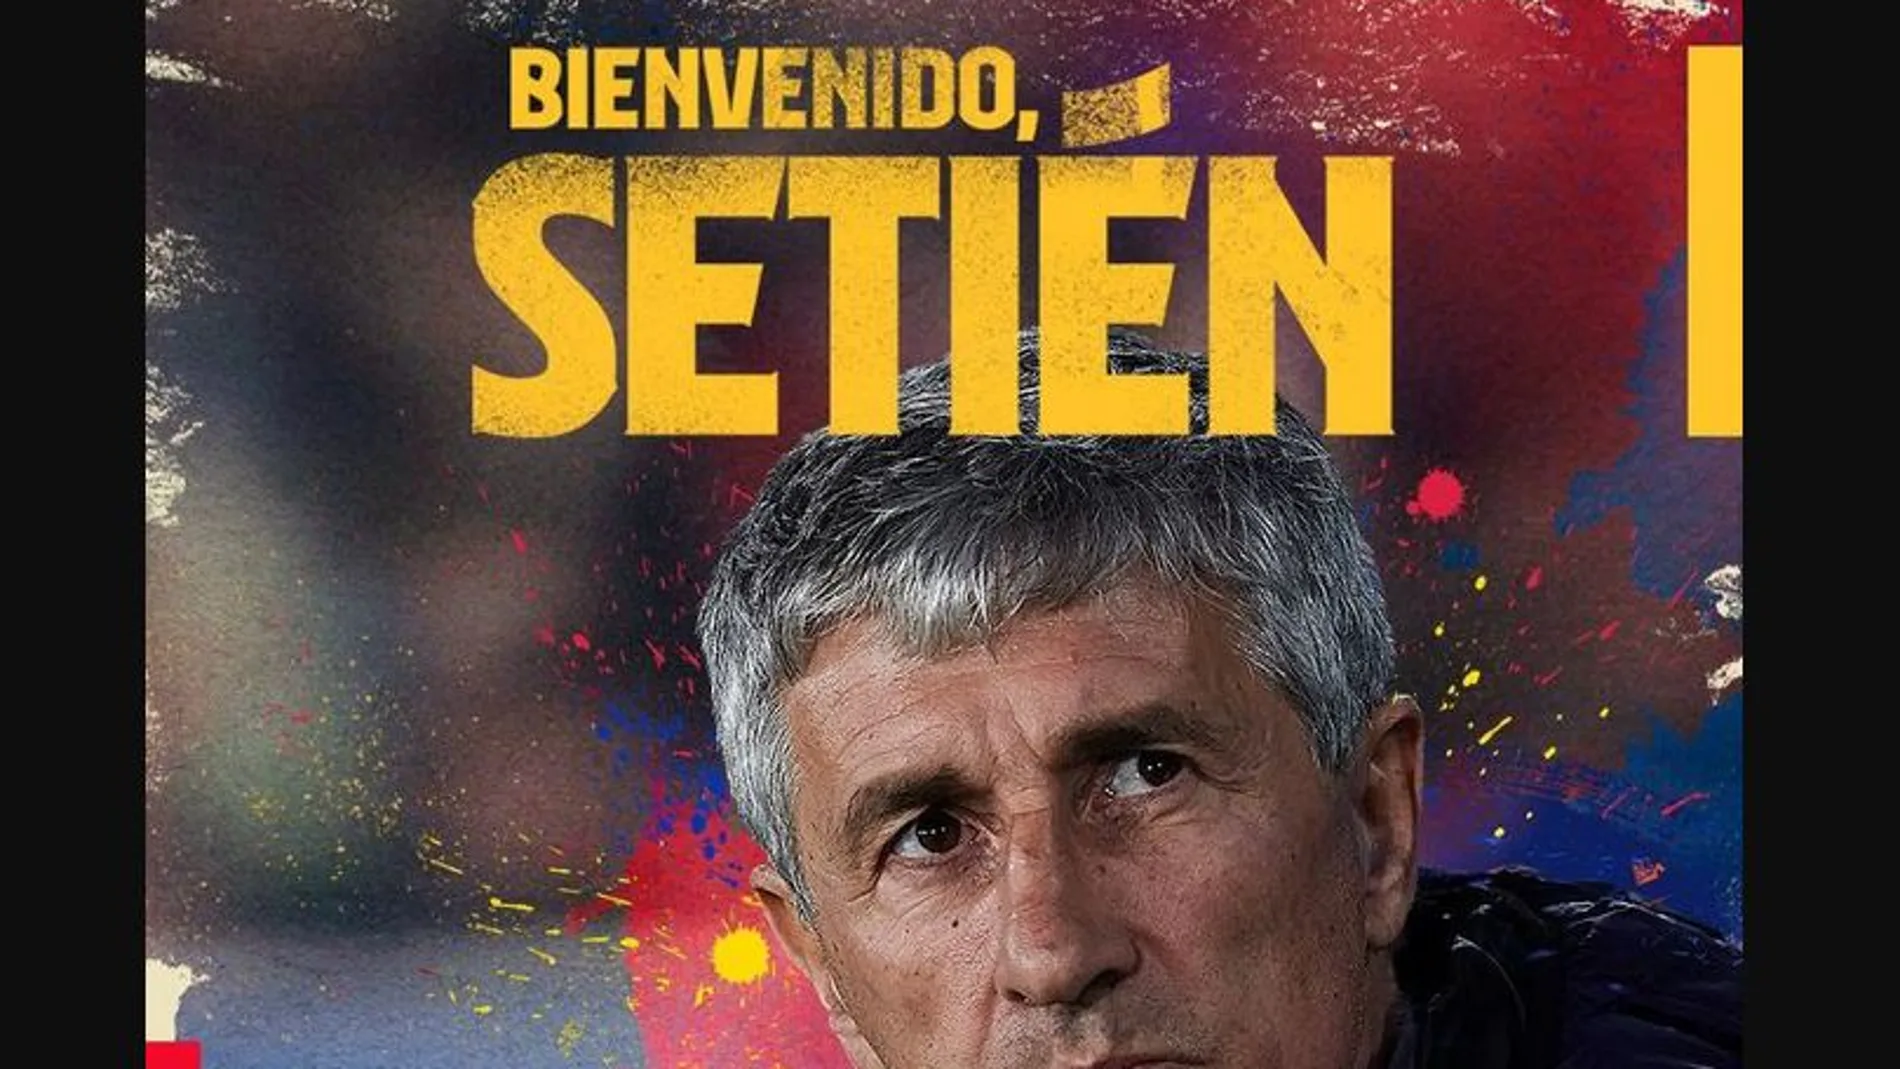 Setién será el nuevo entrenador del FC Barcelona / Twitter